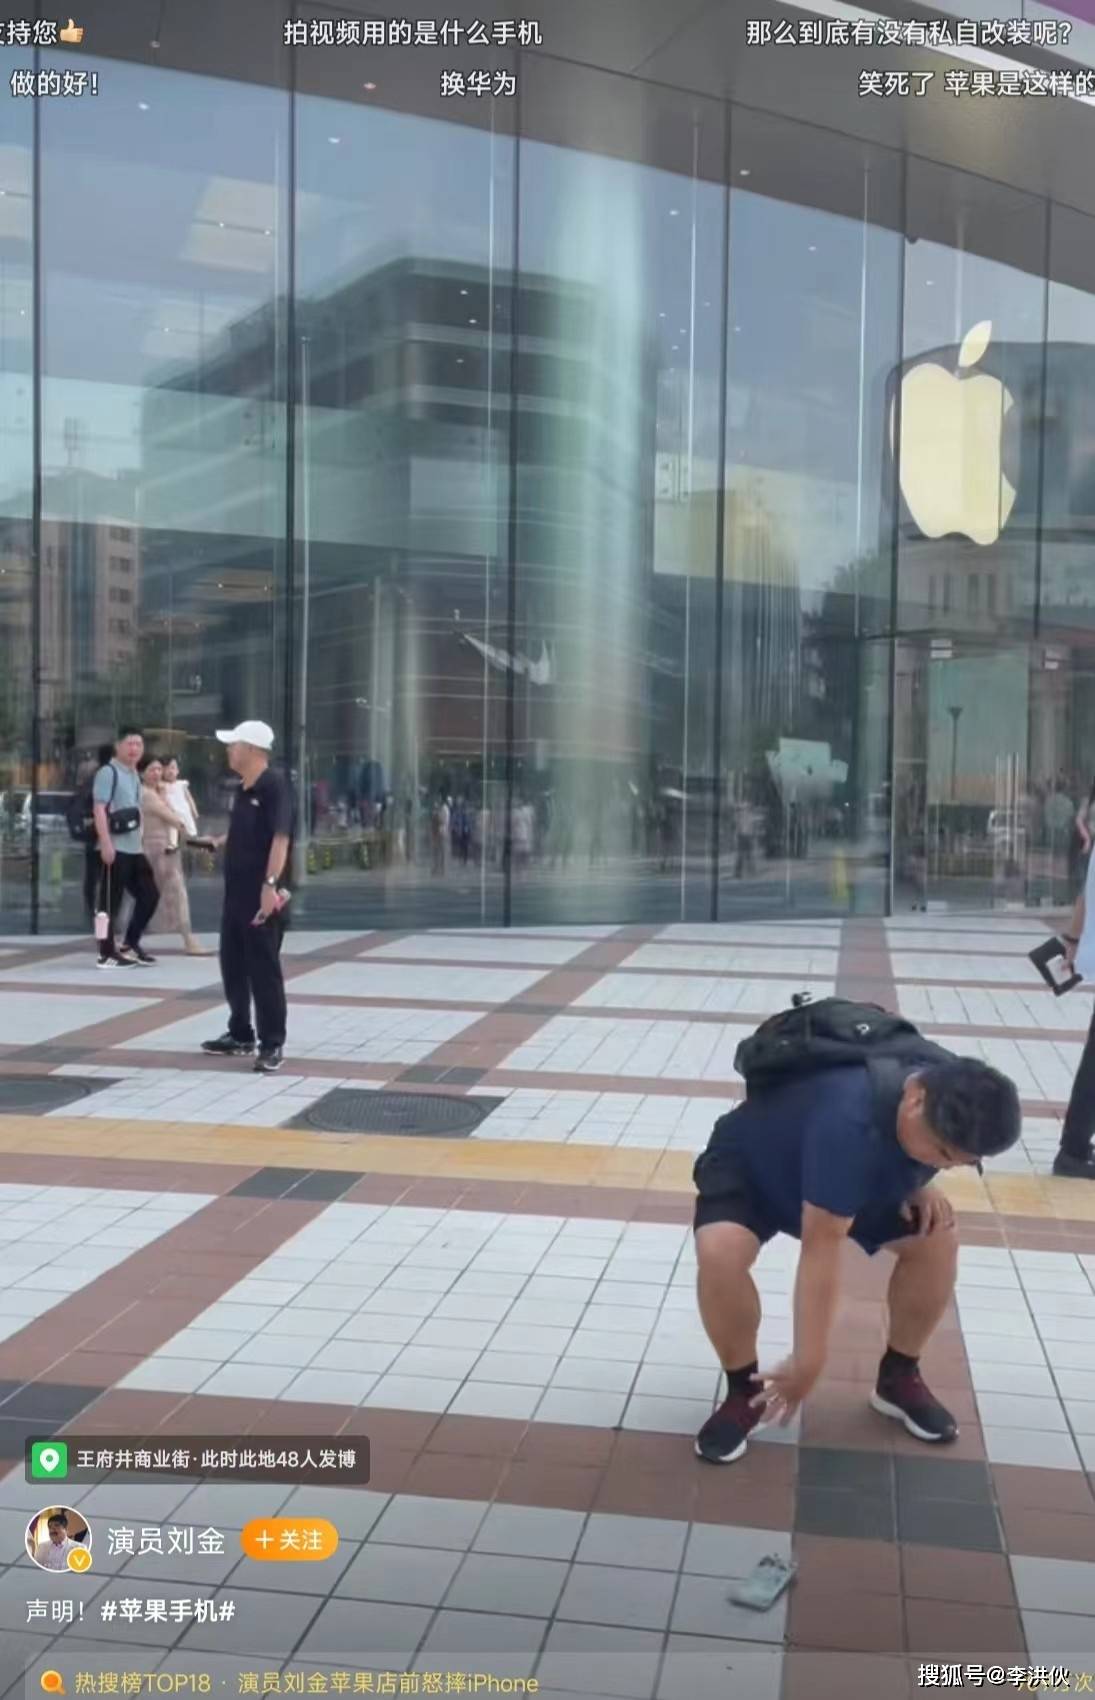 啥操作？刘金在苹果专卖店门口怒砸手机，又用苹果手机发了条动态